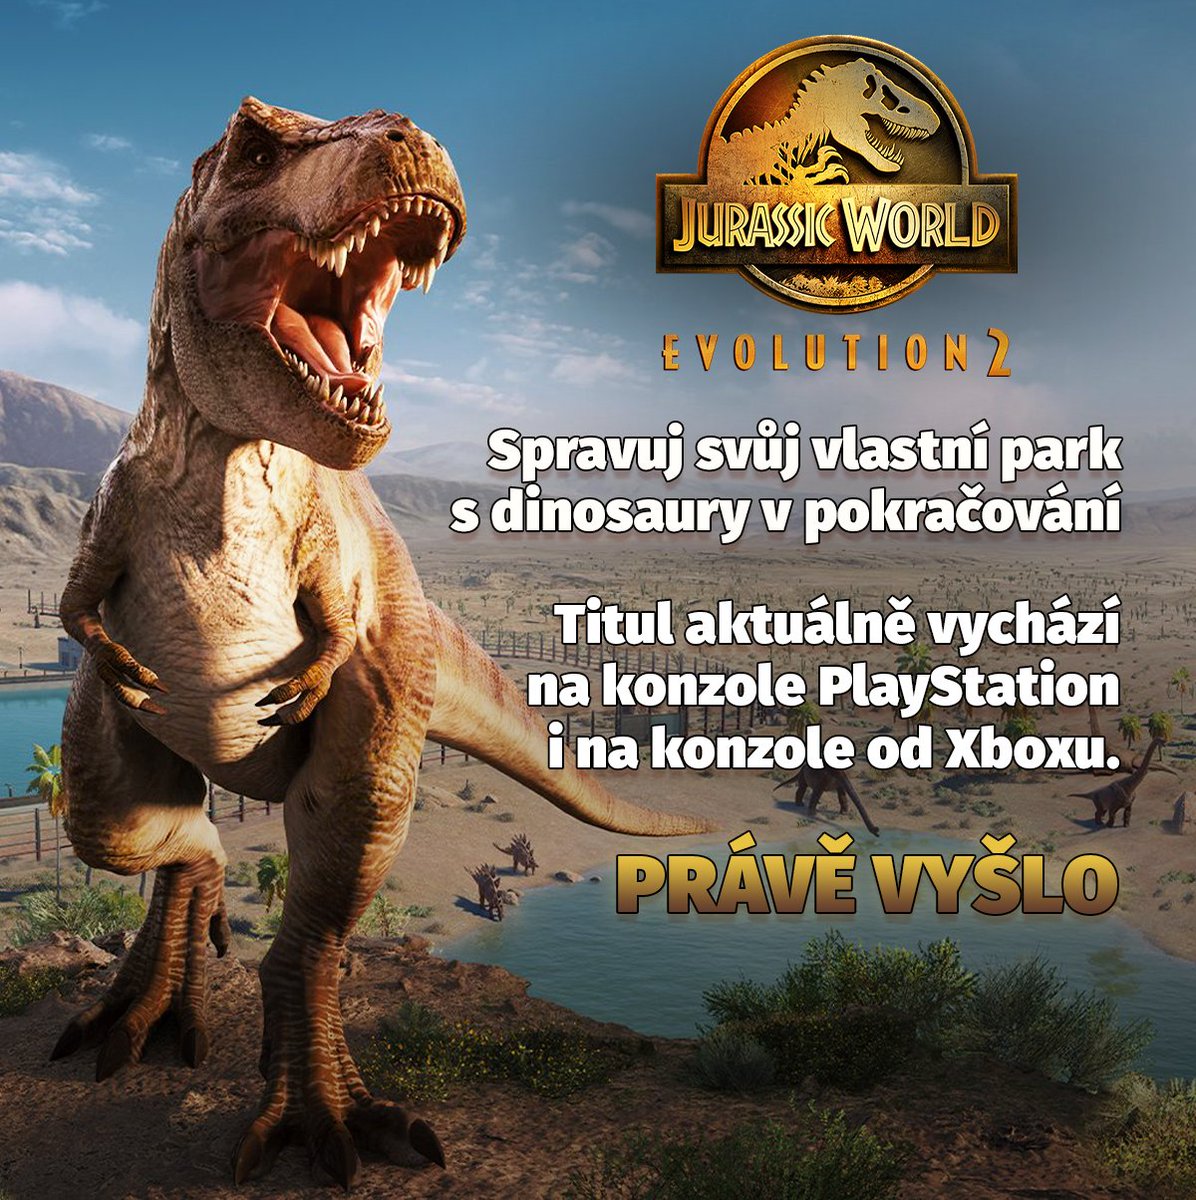 Jurassic World Evolution 2 se vrací s lepšími možnostmi, s lepšími dinosaury a lepším parkem, který si upravíte k obrazu svému 🦖 

Pokud se o hře chcete dozvědět víc, zavítejte na oficiální stránky obchodu: indian-tv.cz/l/D_Dz8trWZ 👀 #ad #spoluprace #promo